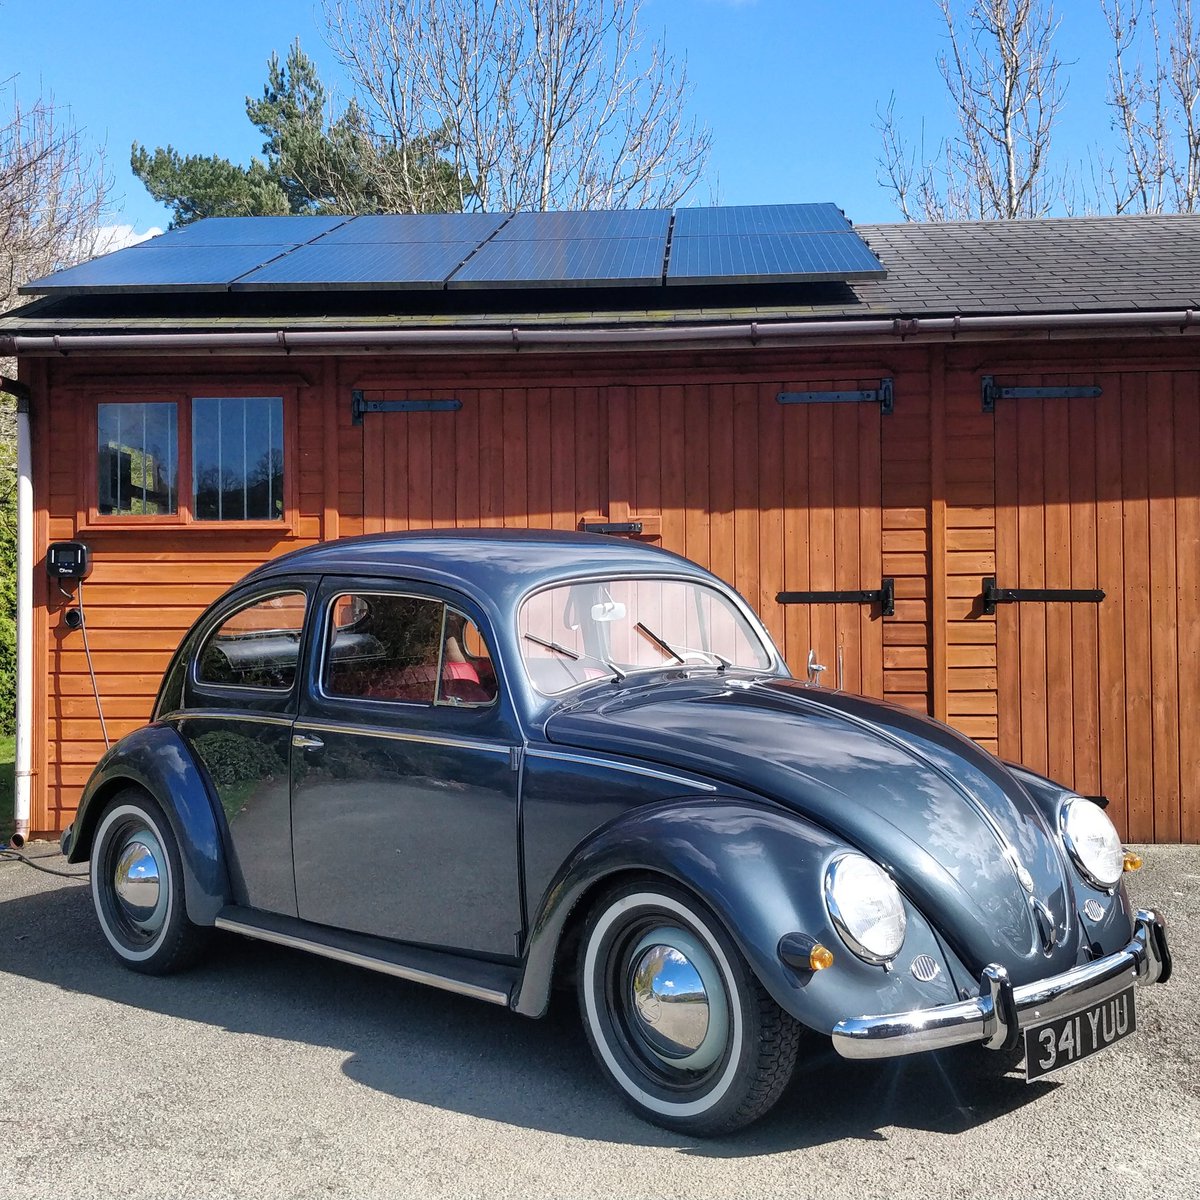 Filling up on sunshine 🌞😎👍 #voltswagen #vwbeetle #volkswagen #beetle #fusca #vwfusca #electricbeetle